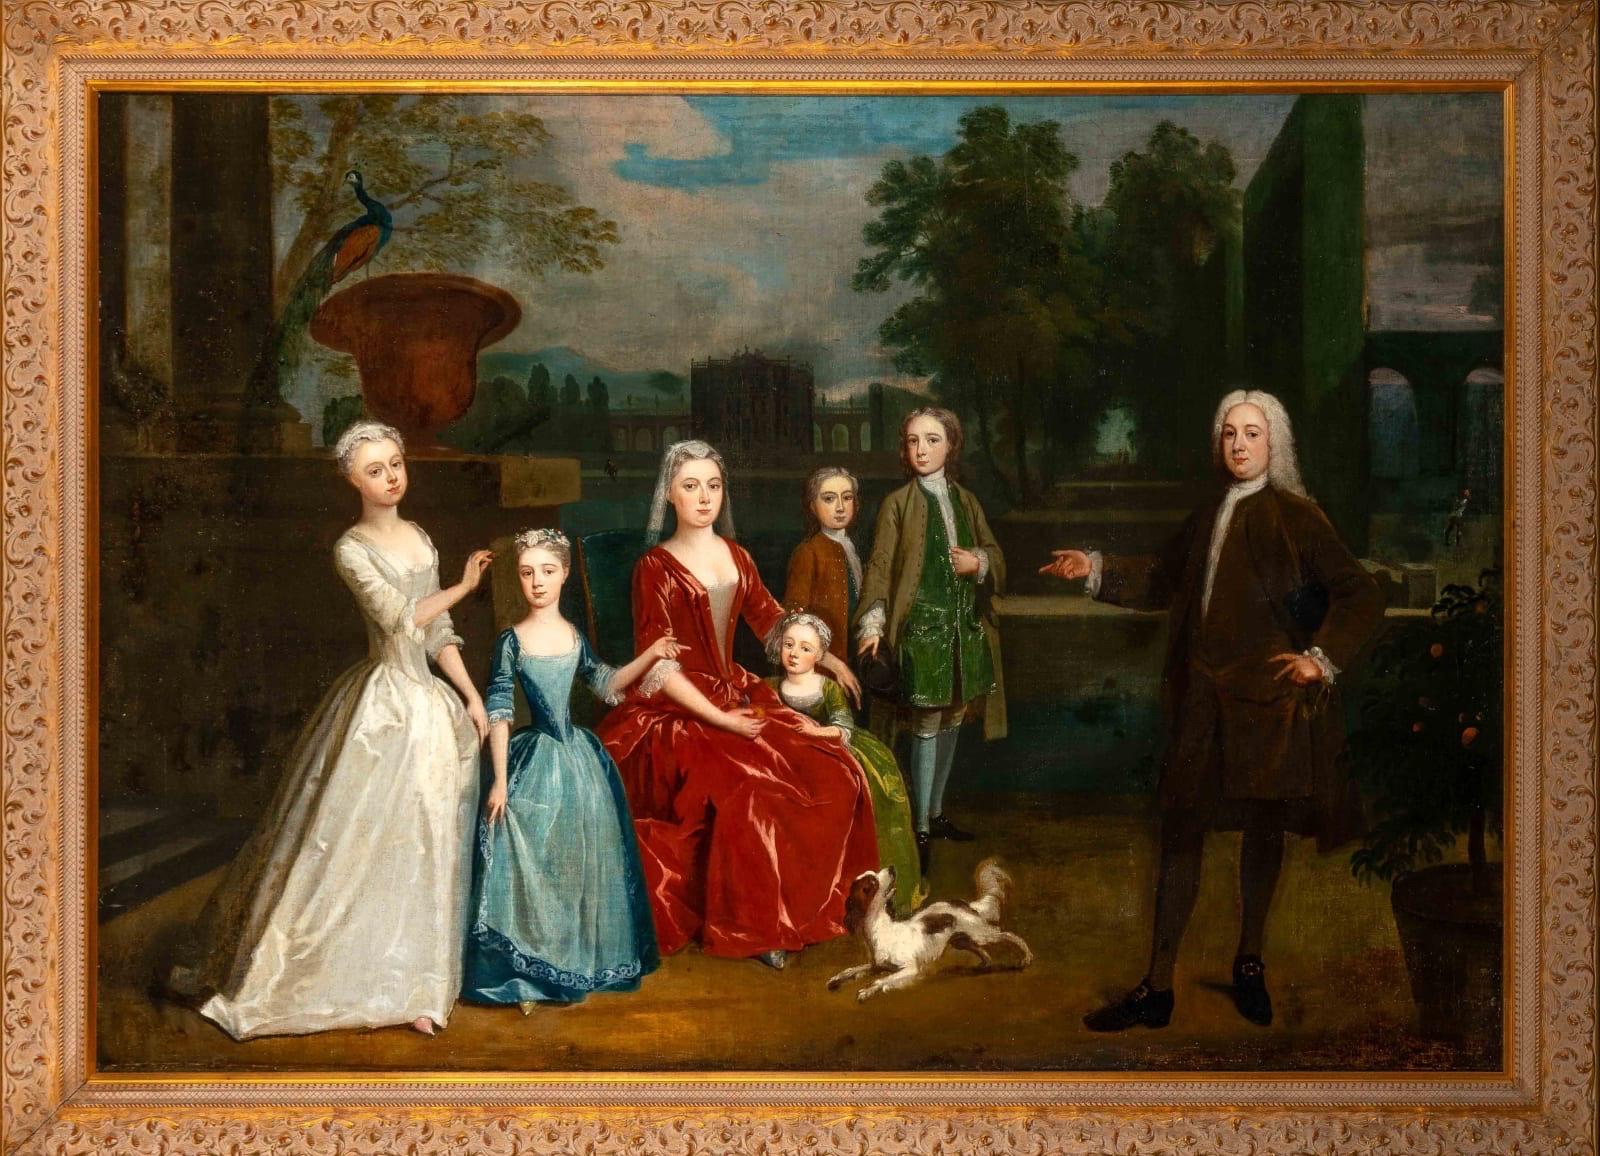 Portrait Painting Charles Philips - Tableau du XVIIIe siècle représentant la famille Dalbiac dans les jardins d'une maison de campagne